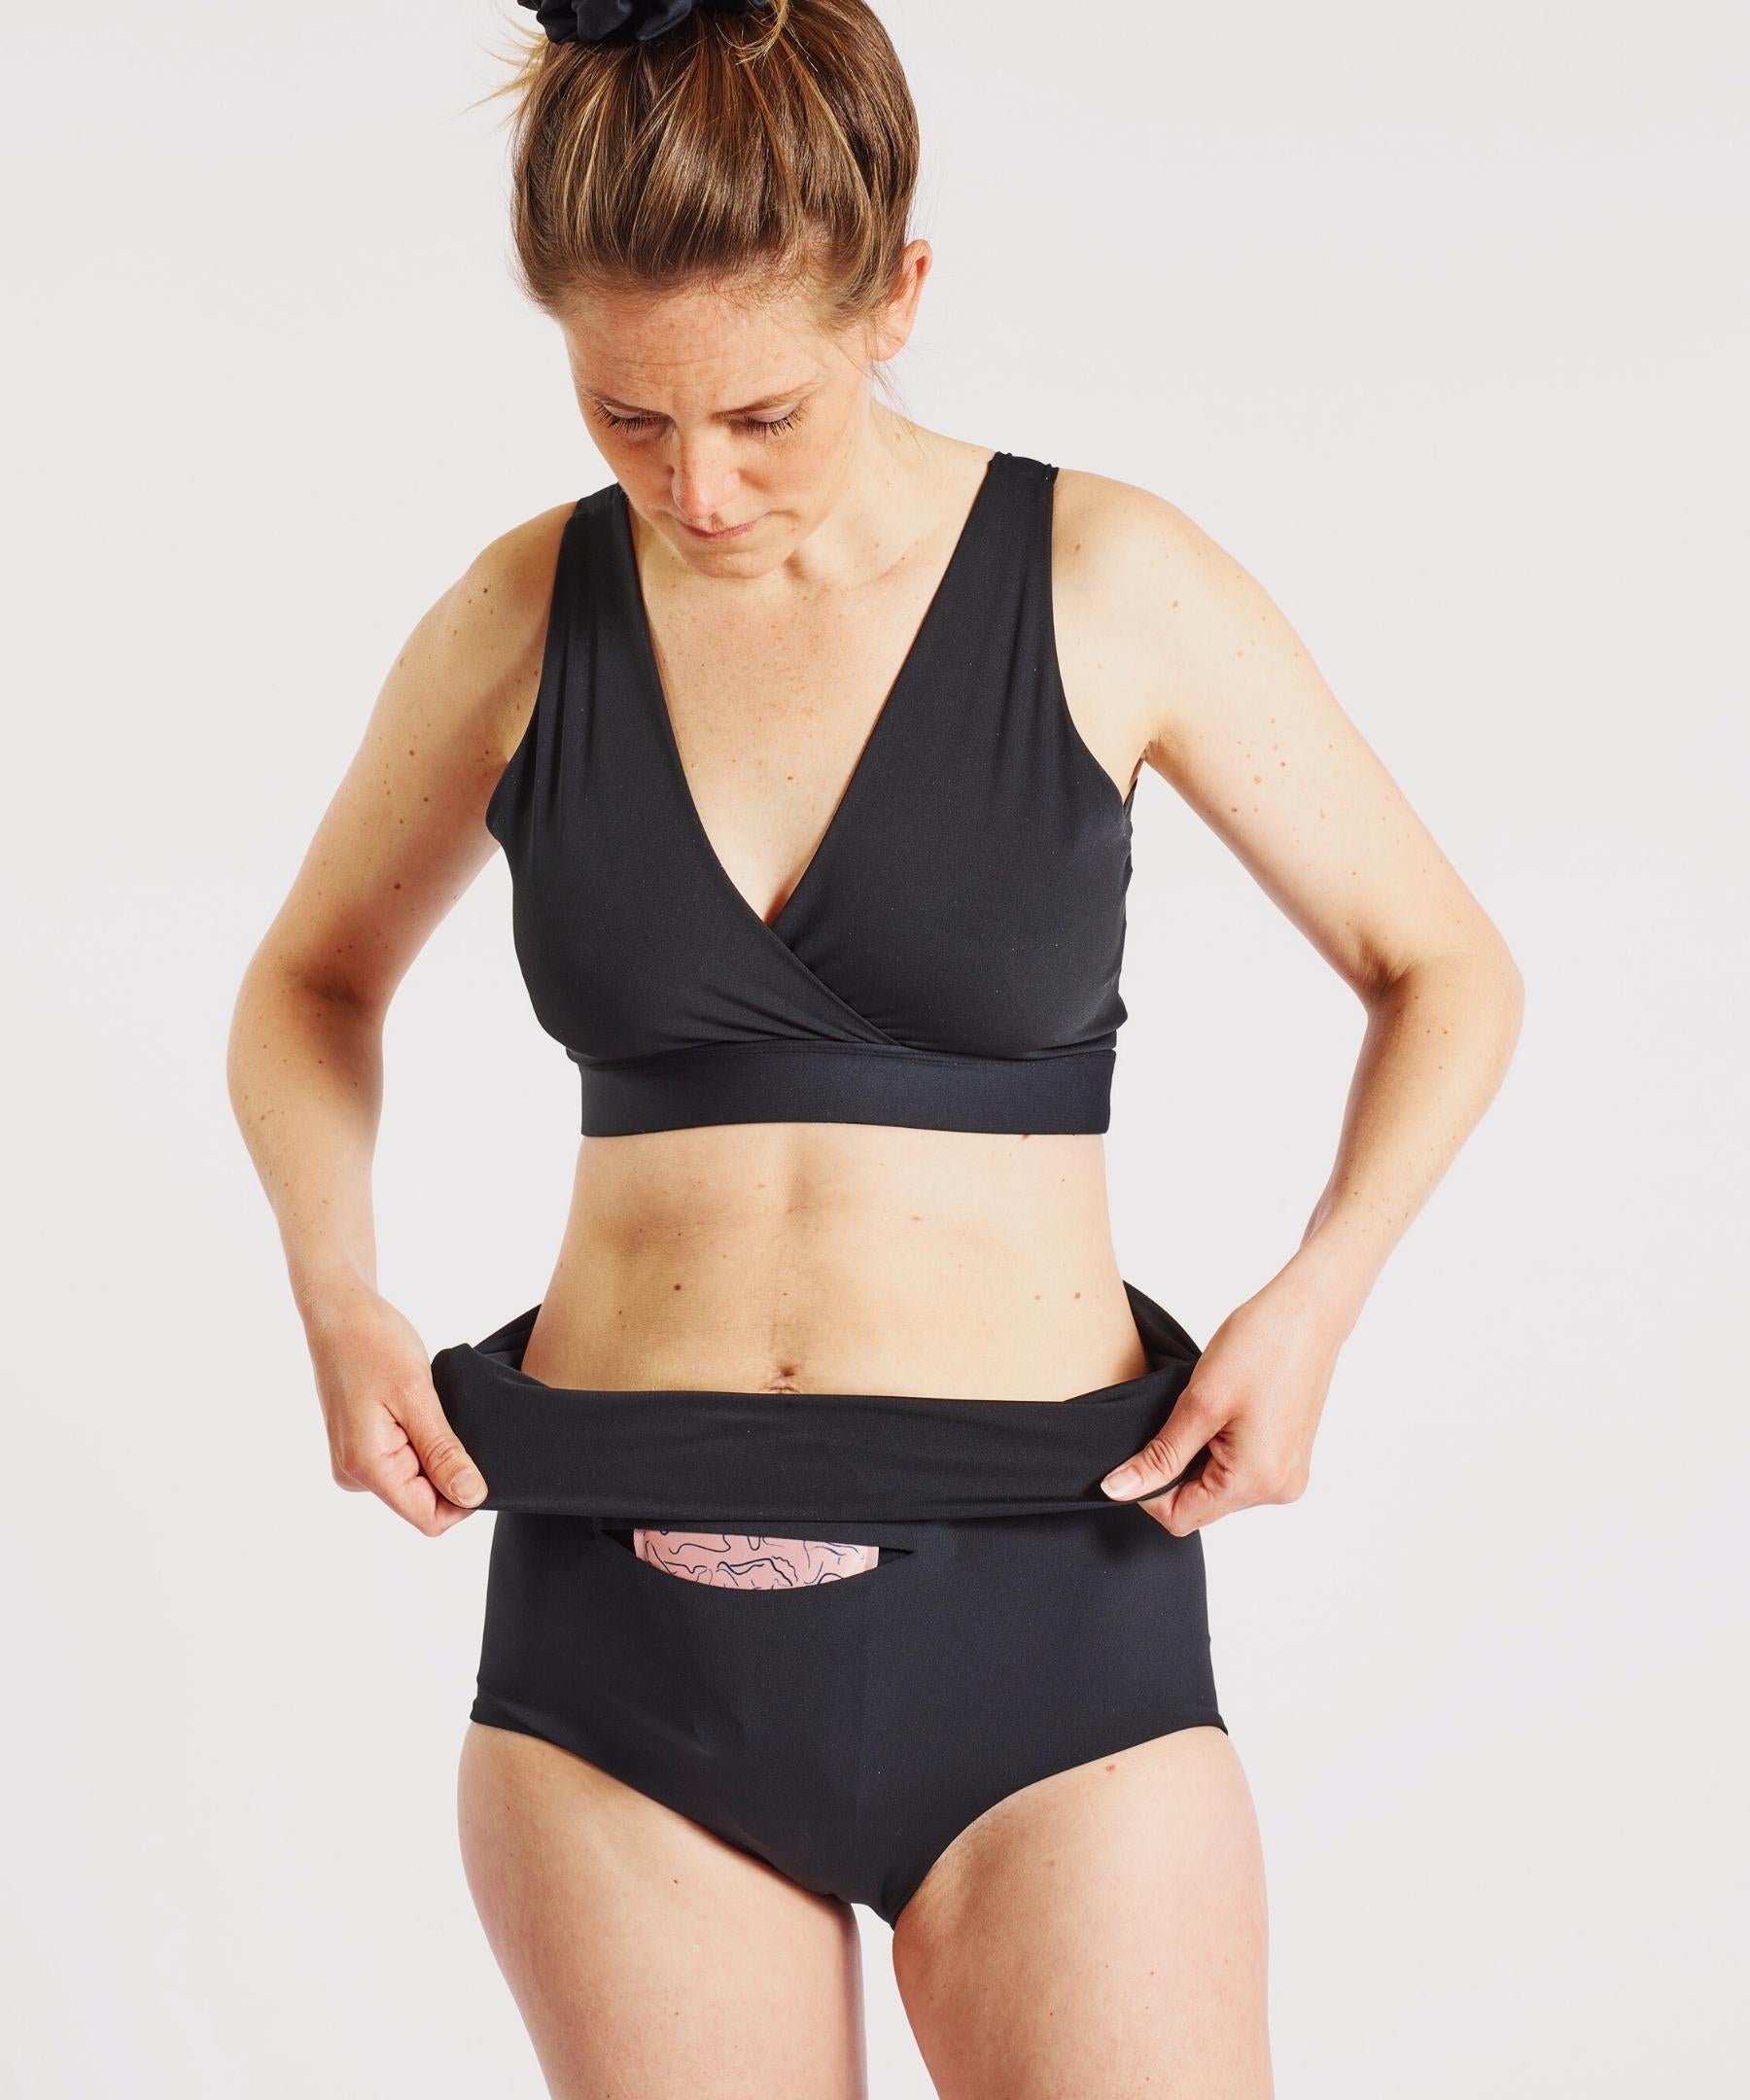 3-Ct FourthWear Postpartum Underwear + Ice/Heat Saver Set – Nyssa